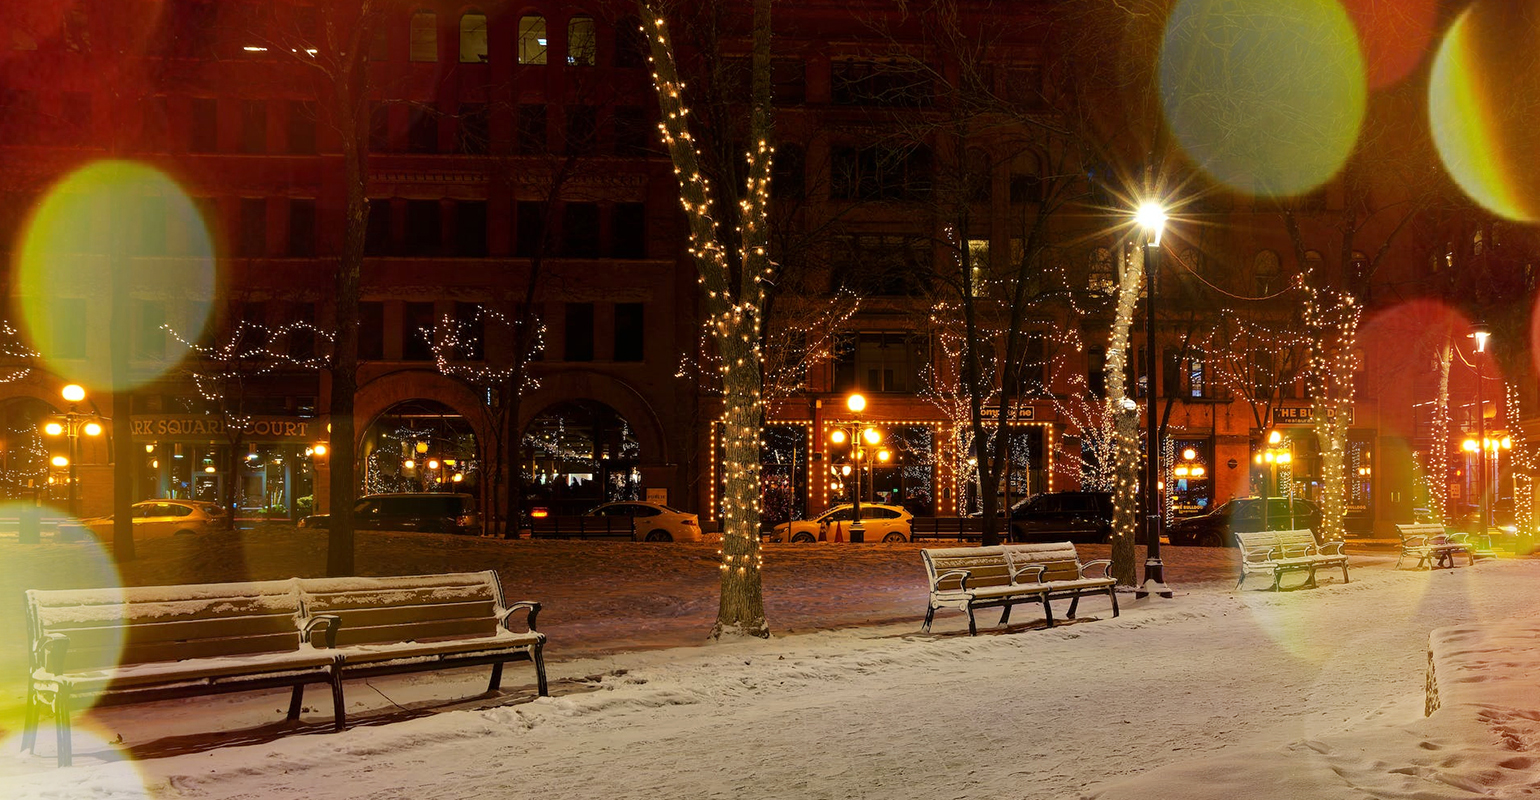 Escena nocturna en la calle en vísperas de navidad con fotor christmas photo effect